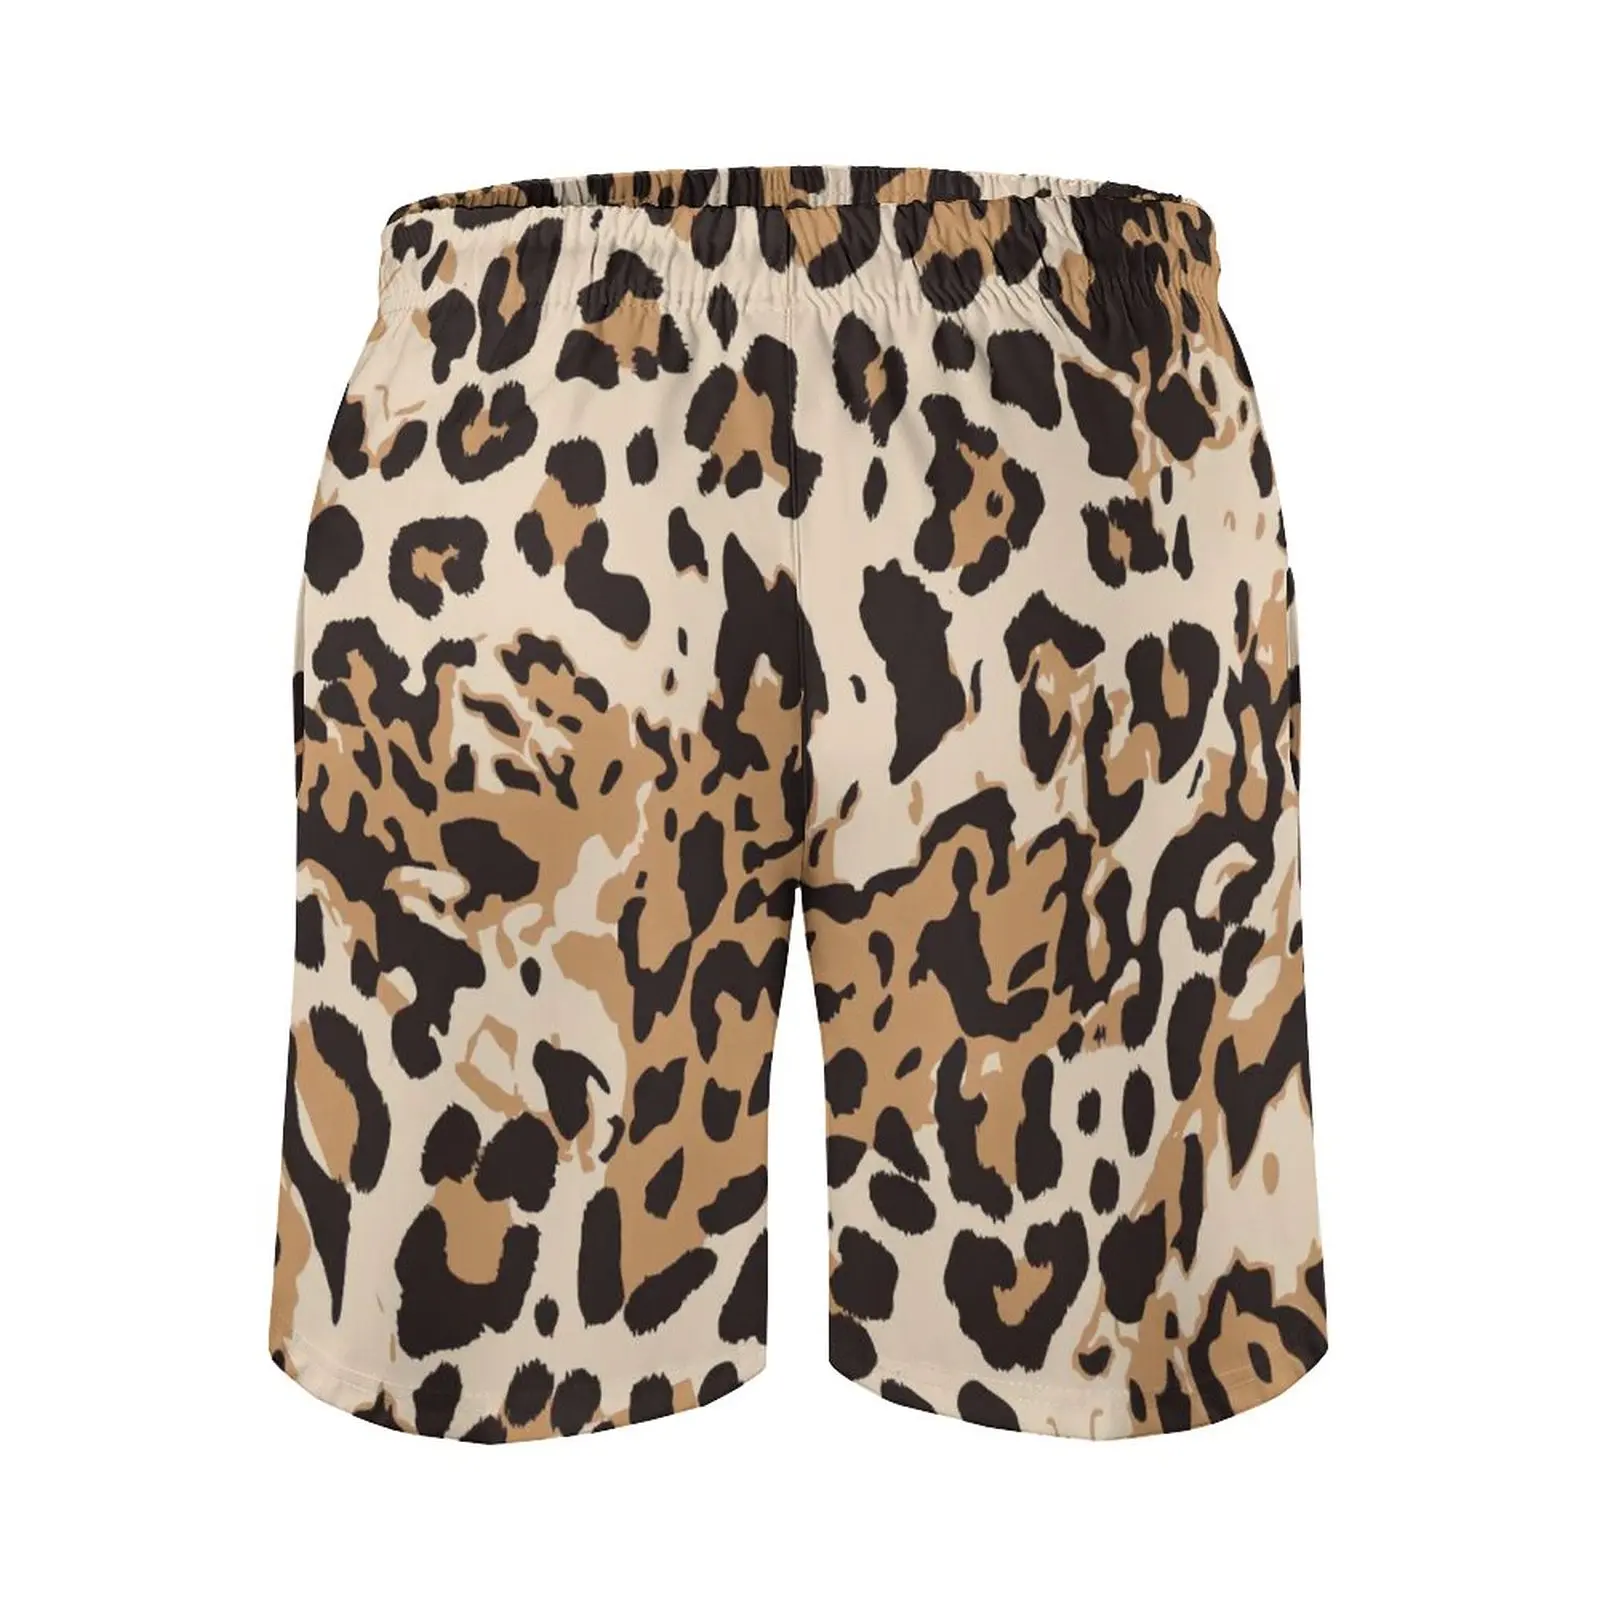 Leopard Print Pantaloni Scurti De Vara Piele De Animal Design Abstract De Funcționare Plaja Pantaloni Scurti Barbati Vintage Personalizat Supradimensionat Trunchiuri De Înot . ' - ' . 4